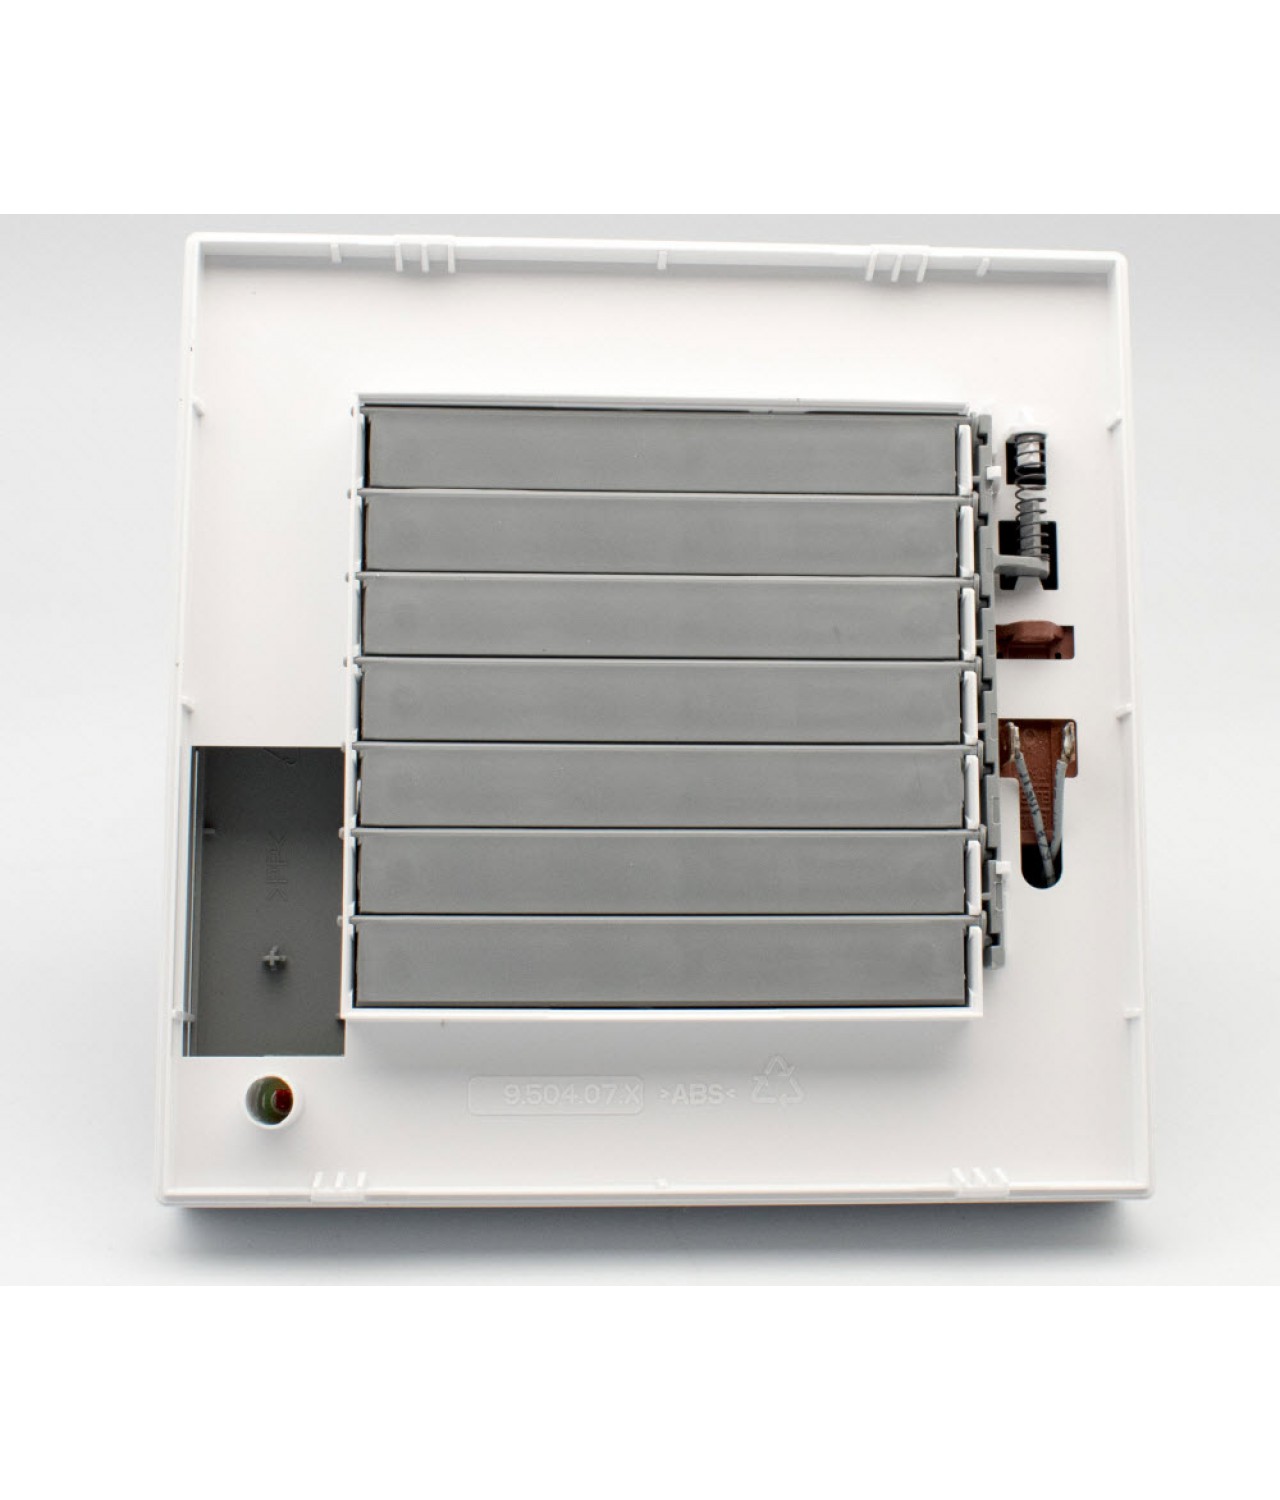 Buitinis ventiliatorius su automatine užsklanda, judesio jutikliu, laikmačiu ir guoliais IN A 15/6 PIR BB, Ø150 mm - paveikslėlis 3